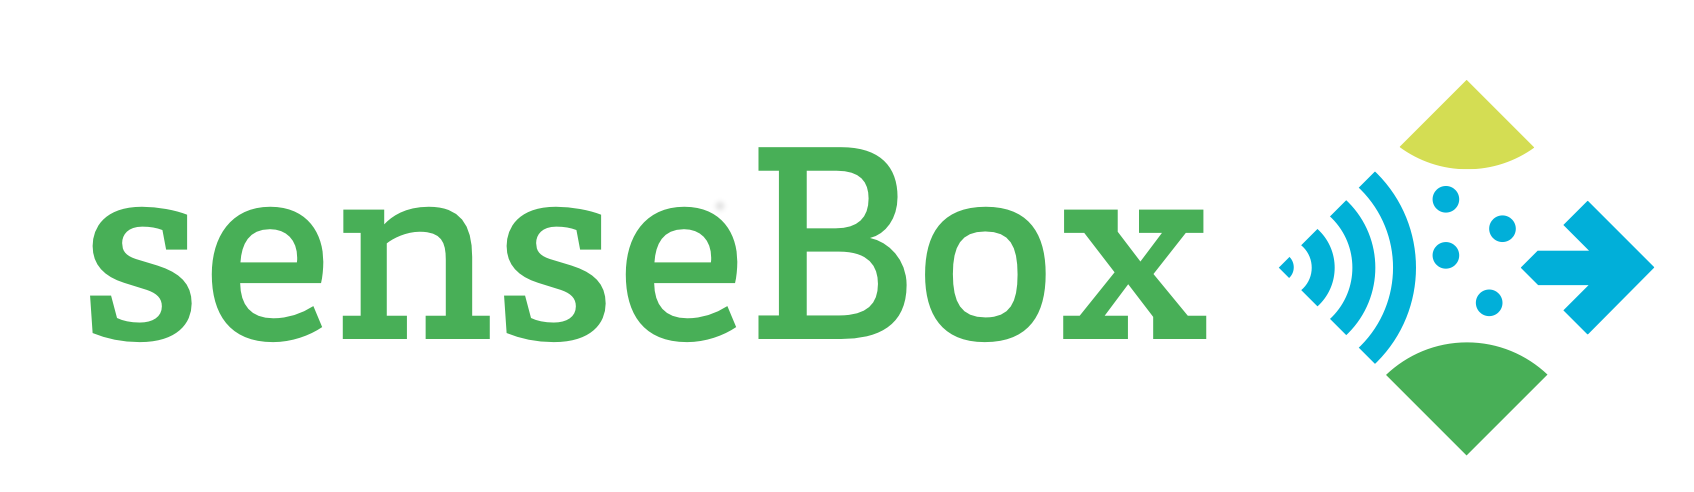 Sensebox Logo 2016